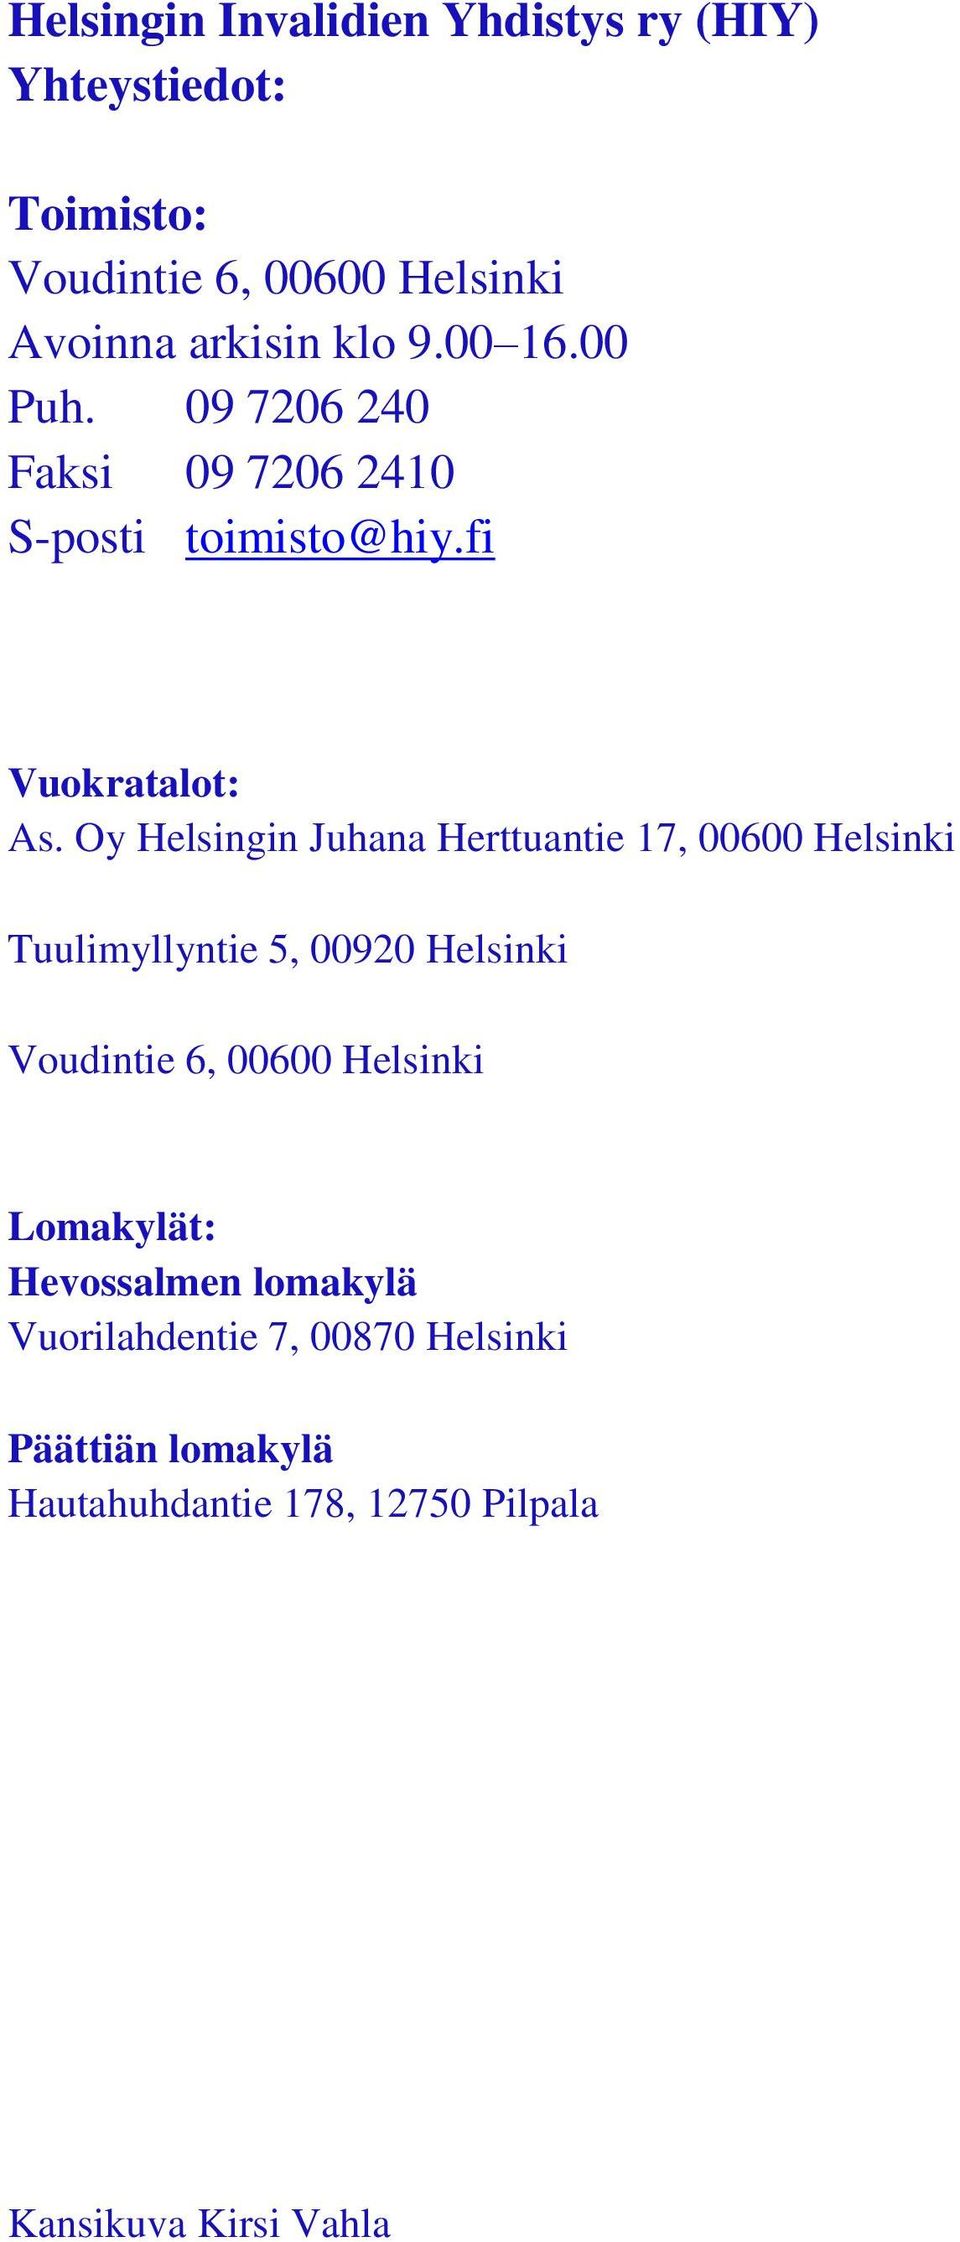 Oy Helsingin Juhana Herttuantie 17, 00600 Helsinki Tuulimyllyntie 5, 00920 Helsinki Voudintie 6, 00600 Helsinki